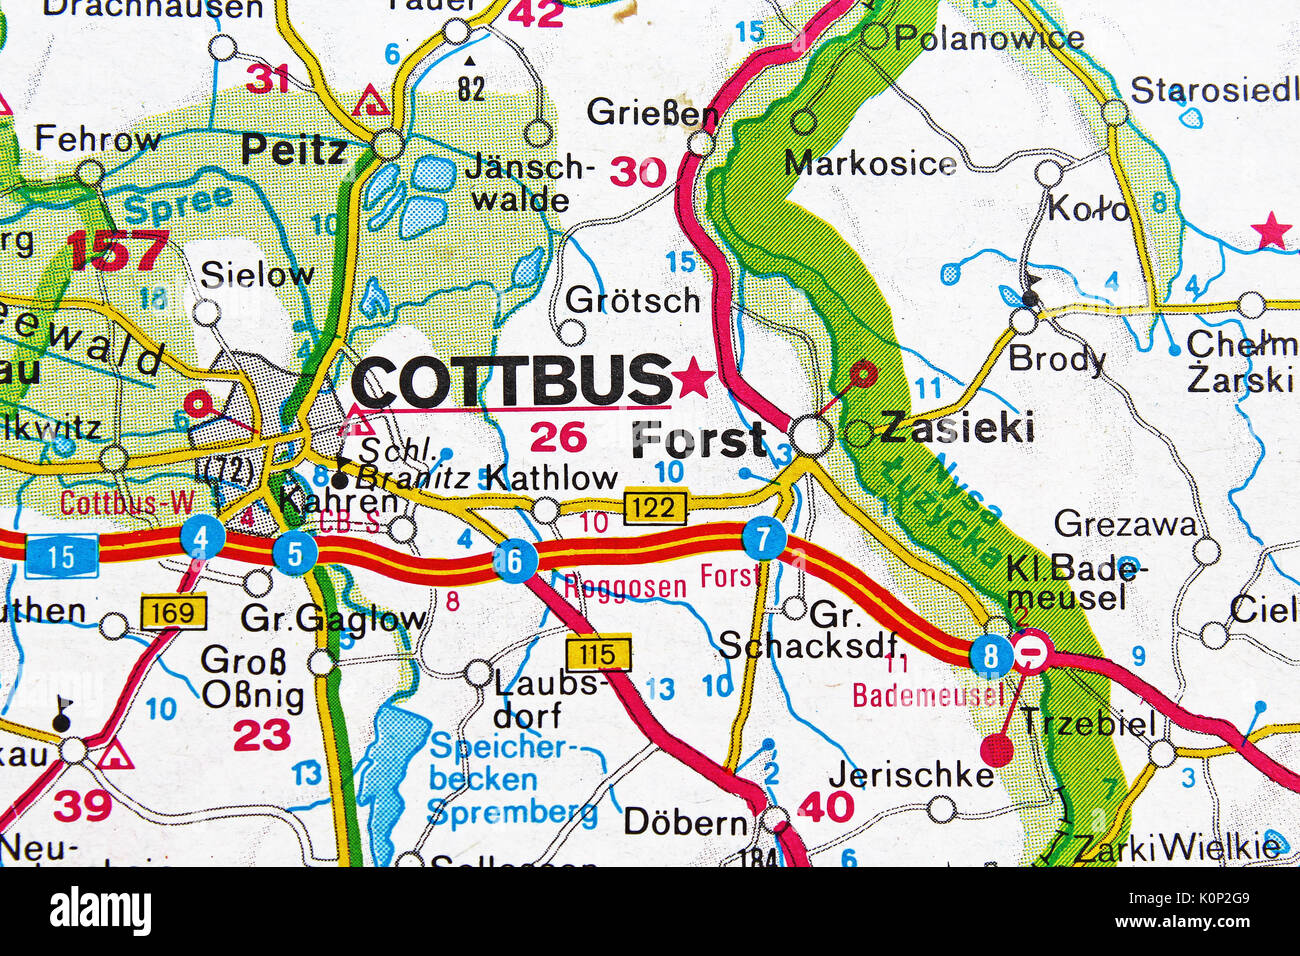 Cottbus Stadtplan Stadtplan Stadtplan Stockfotografie - Alamy